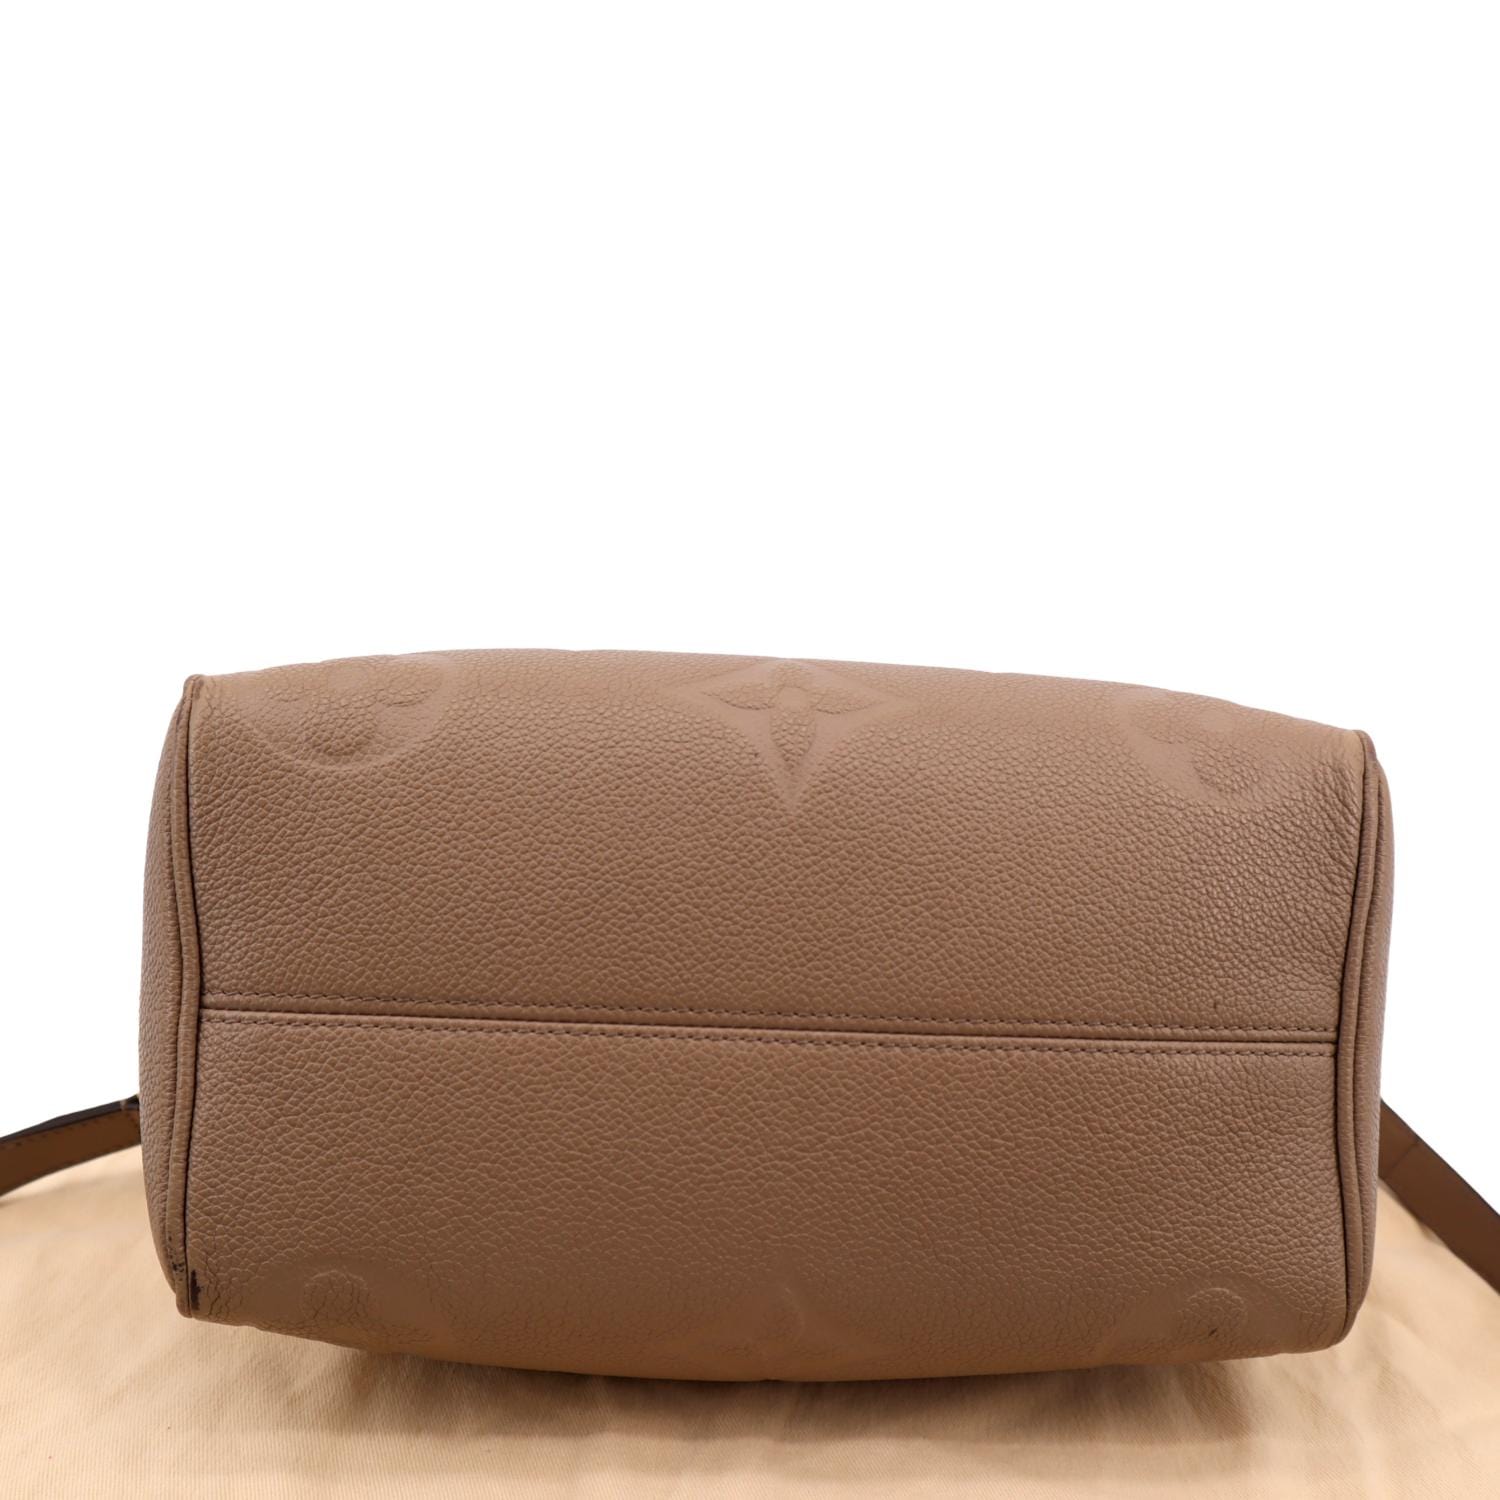 Speedy Bandoulière 25 Top handle bag in Monogram Empreinte leather